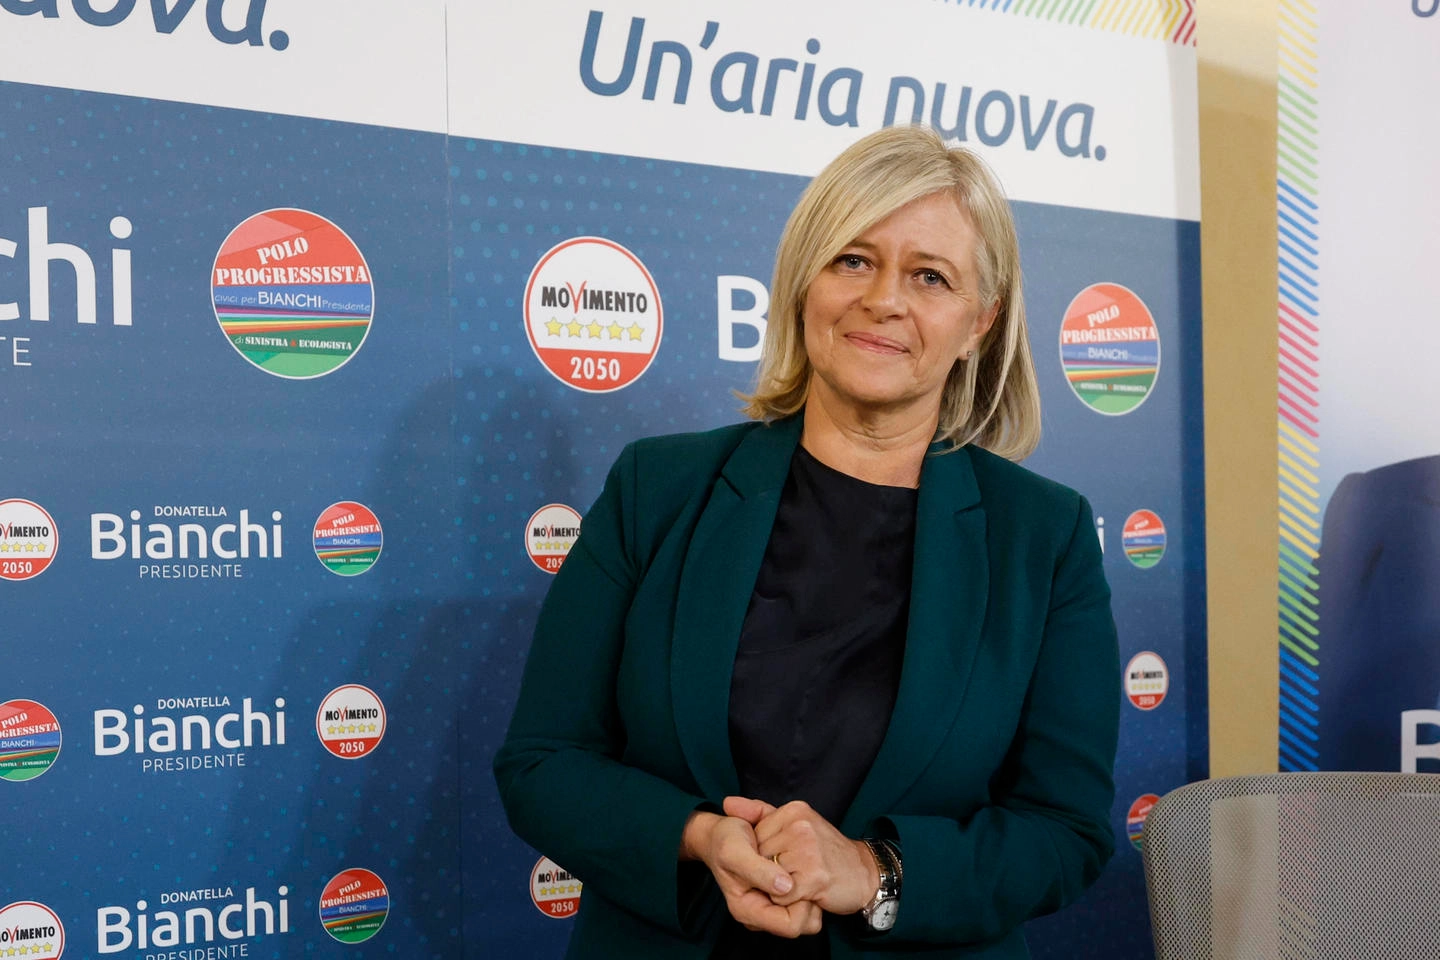 La candidata del M5S alle elezioni regionali del Lazio, Donatella Bianchi